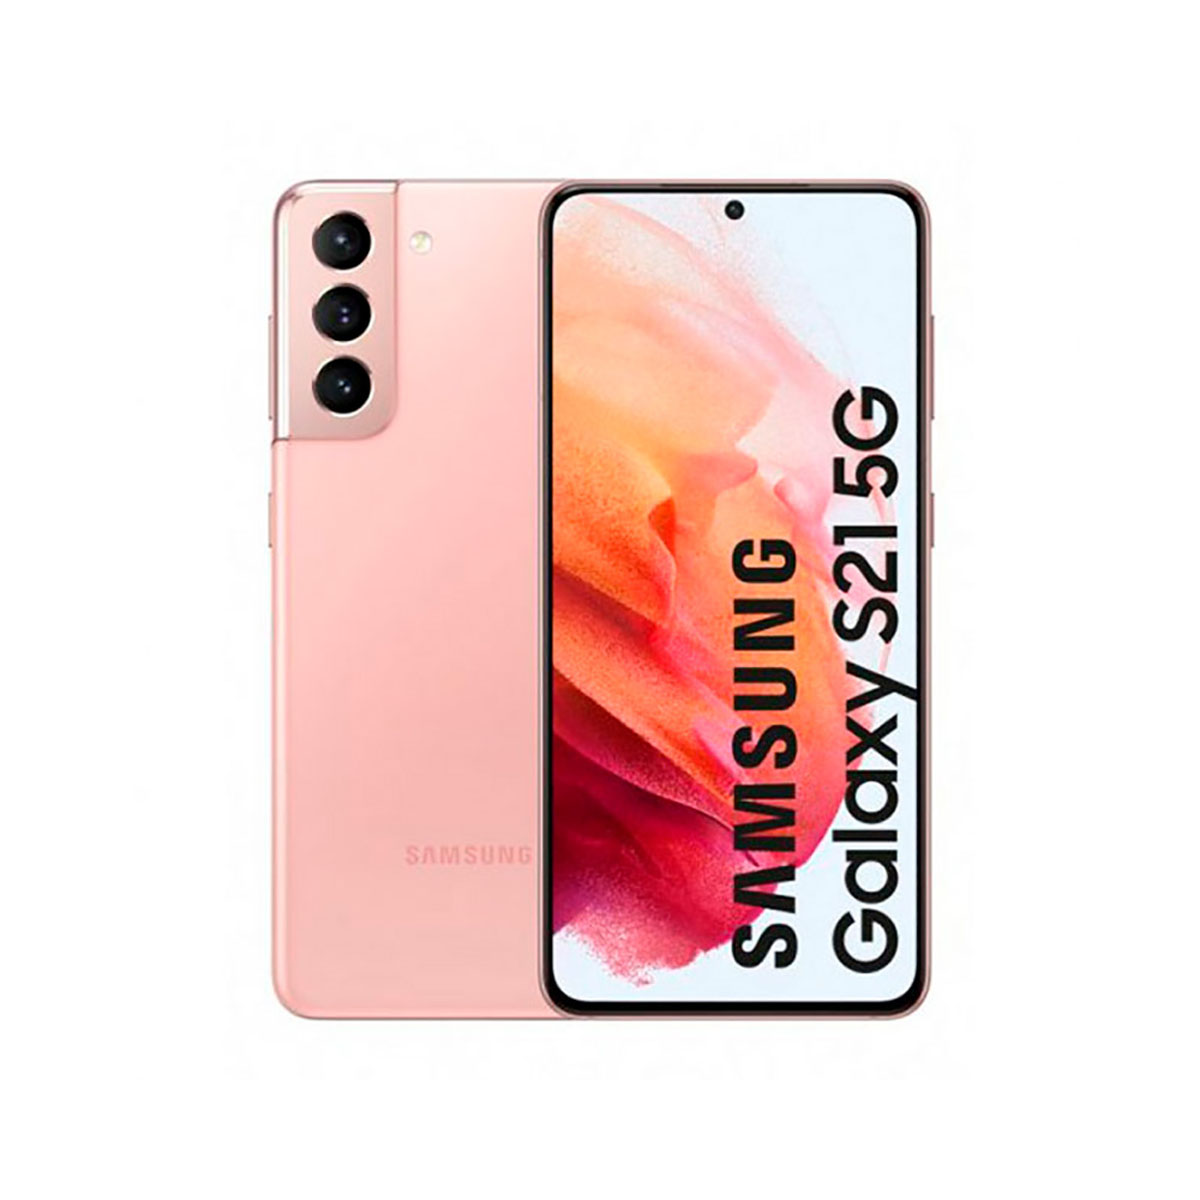 PHANTOM GB 128 128GB GALAXY S21 Dual 5G SIM PINK Pink Phantom SAMSUNG